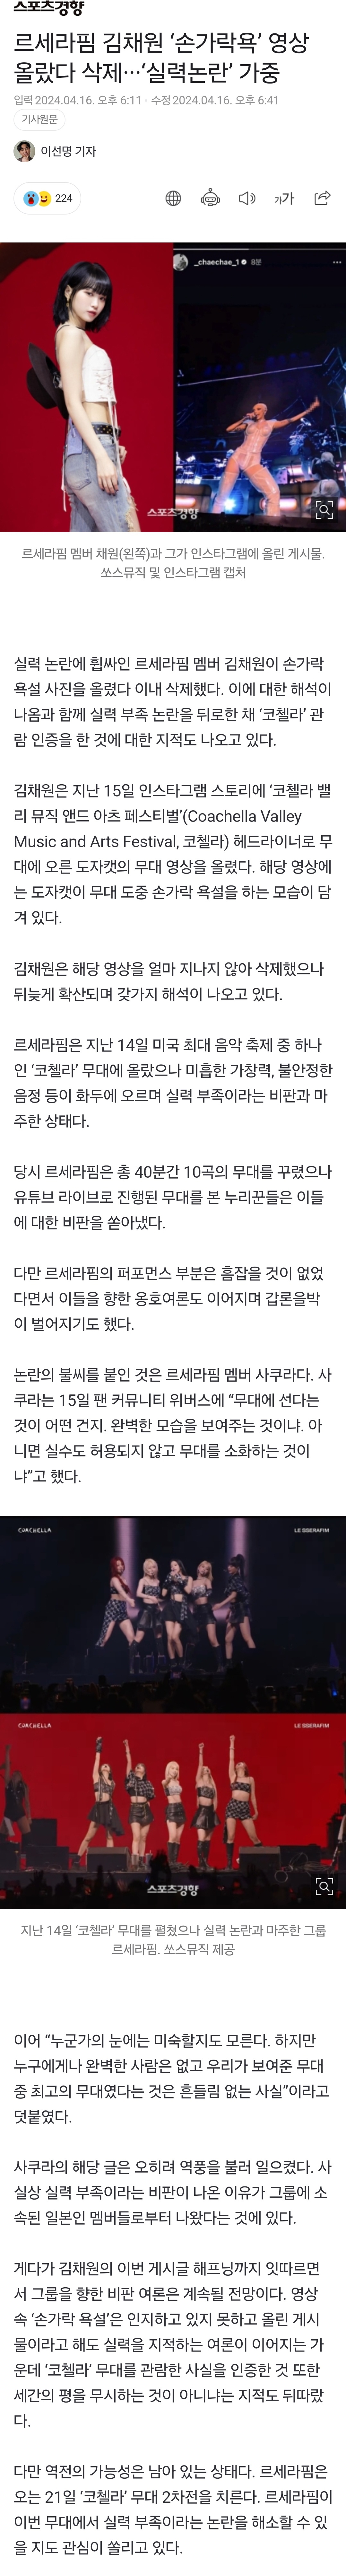 [정보/소식] 르세라핌 김채원 '손가락욕' 영상 올랐다 삭제···'실력논란' 가중 | 인스티즈